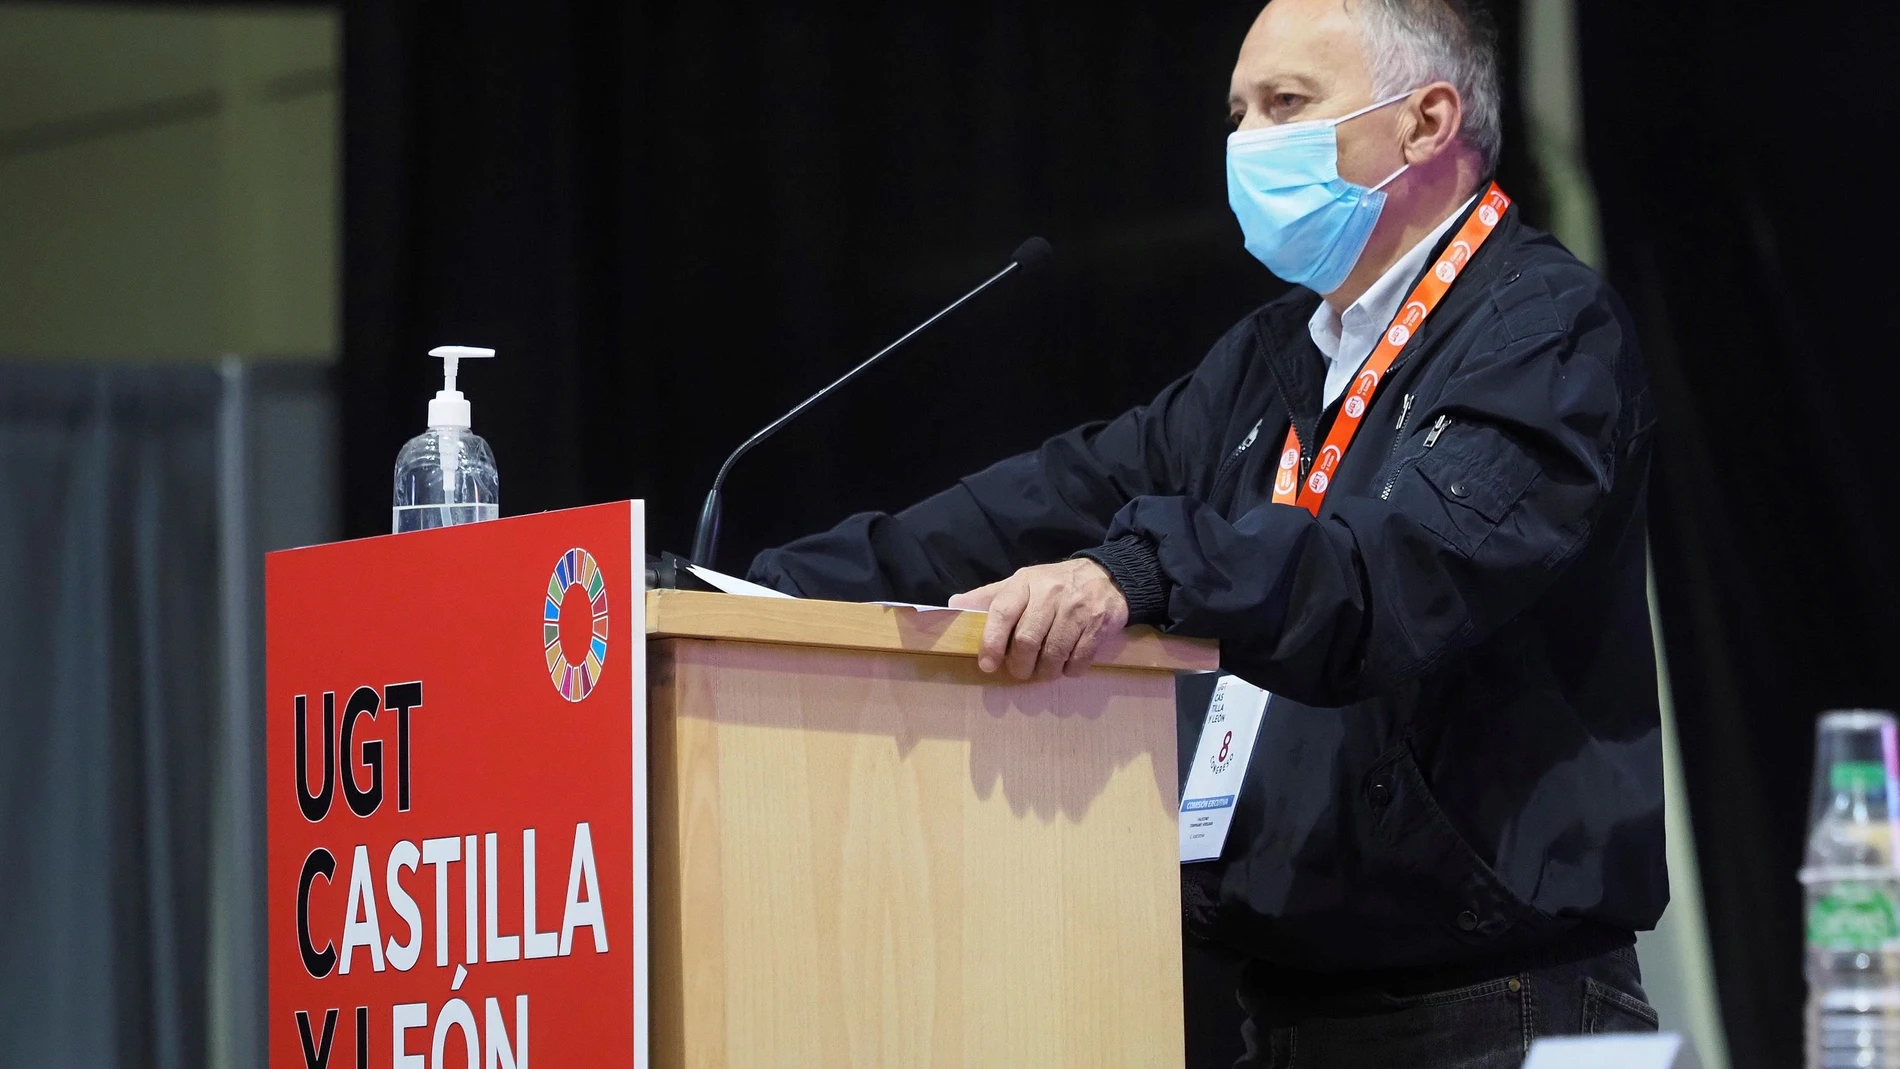 VALLADOLID, 15/04/2021.- El secretario general de UGT Castilla y León, Faustino Temprano, que ha sido reelegido en su cargo al frente de la UGT